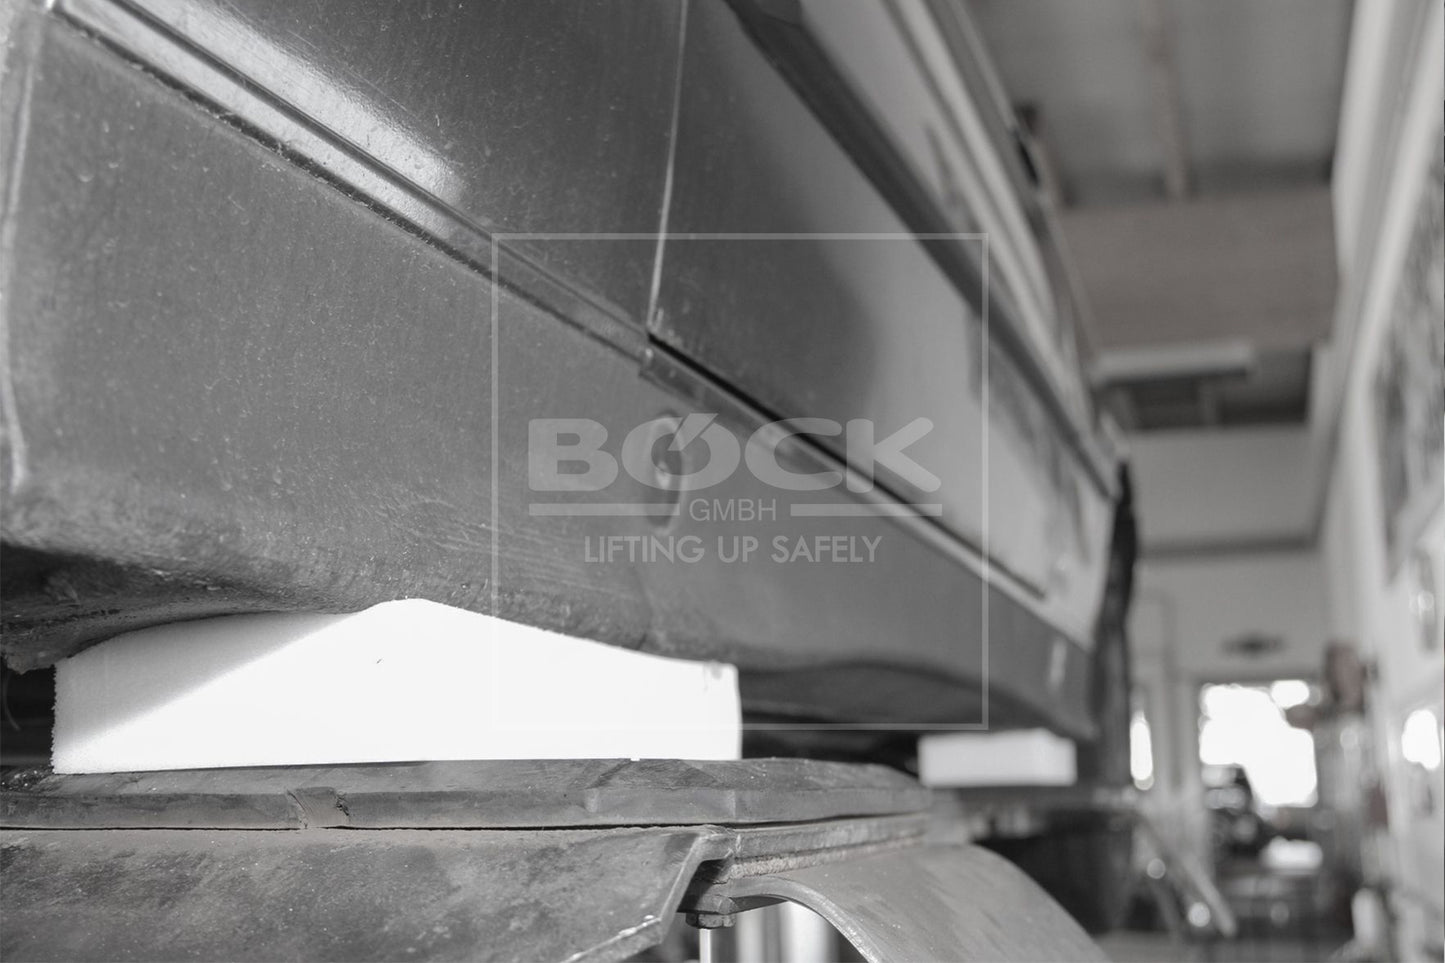 Bloc polymère pour utilisation universelle sur ponts élévateurs à ciseaux dimensions 340 x 132 x 50 +/- 5 mm